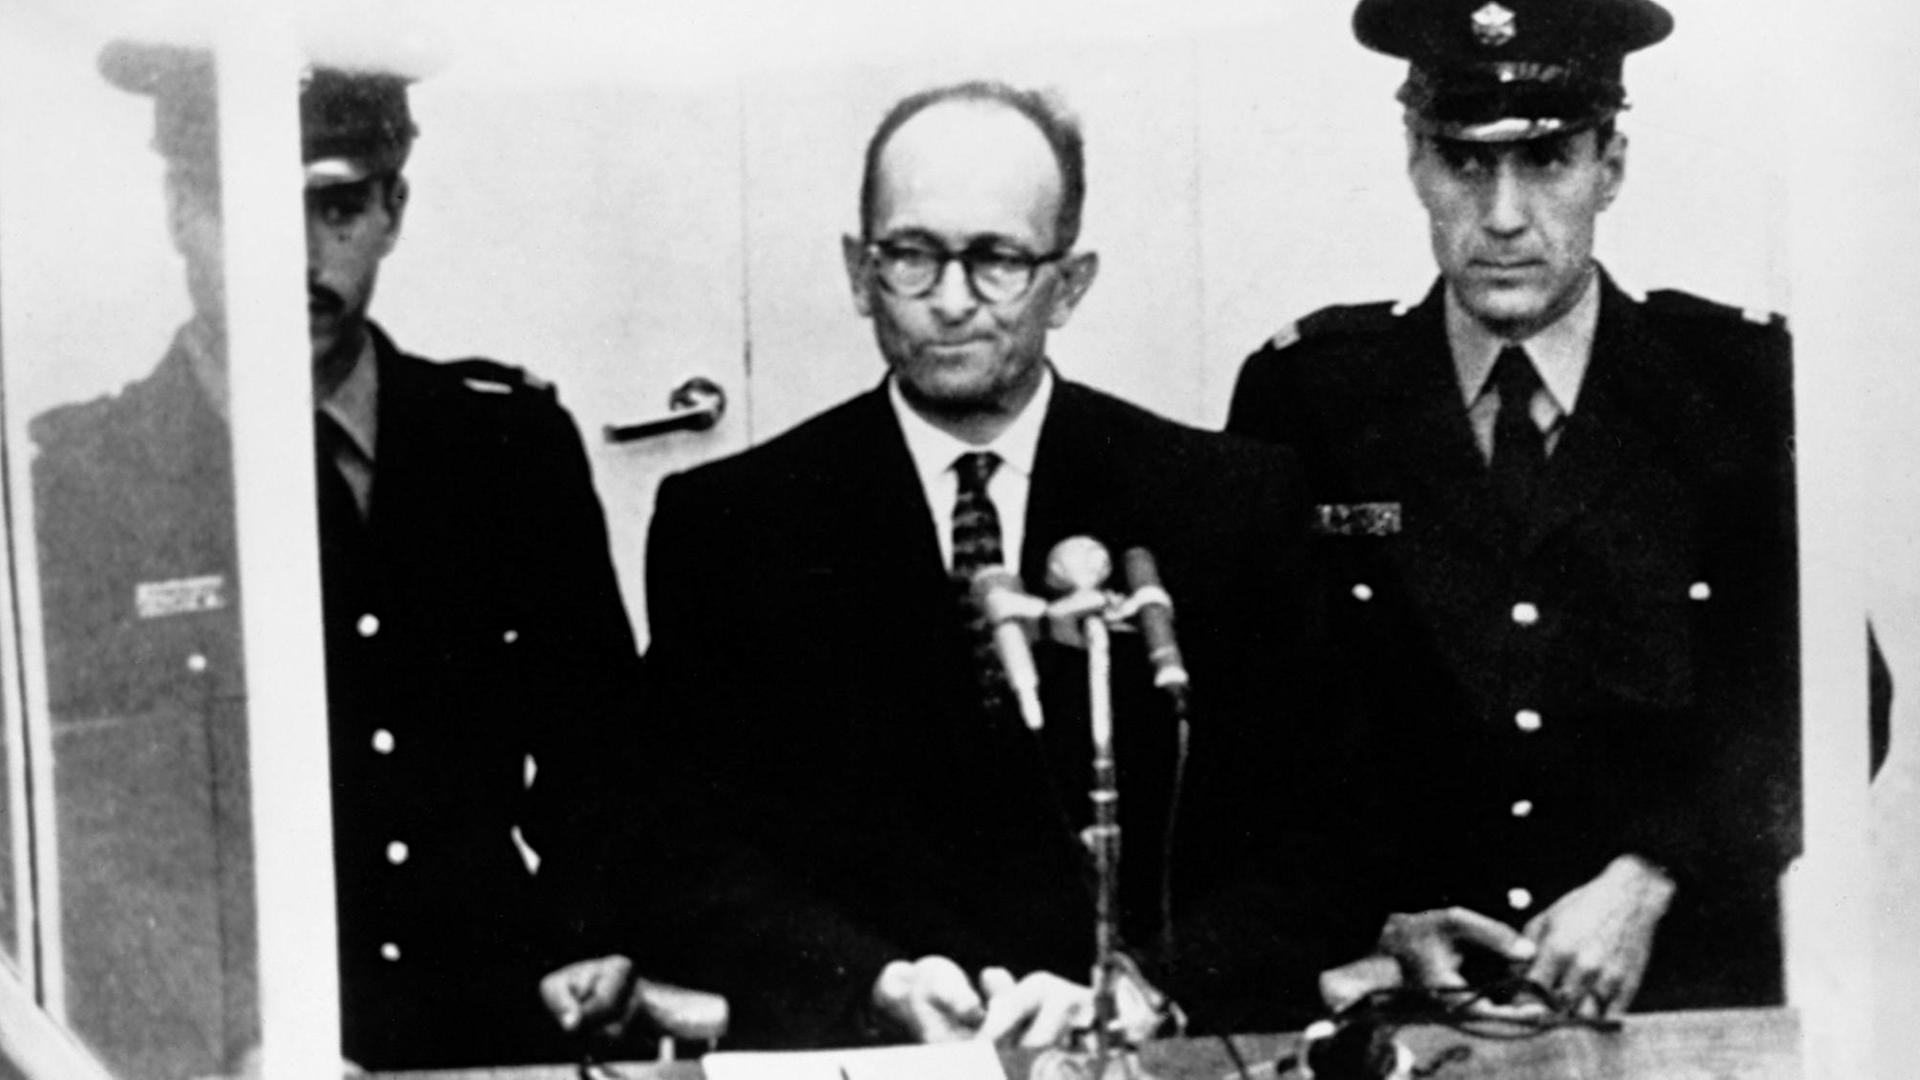 Dieses Bild ging um die Welt: Adolf Eichmann, Organisator der Deportationen zur Vernichtung der europäischen Juden während der NS-Zeit, sitzt in einer gläsernen Kabine und hört über Kopfhörer die Simultanübersetzung der Anklage durch das Jerusalemer Bezirksgericht 1961.